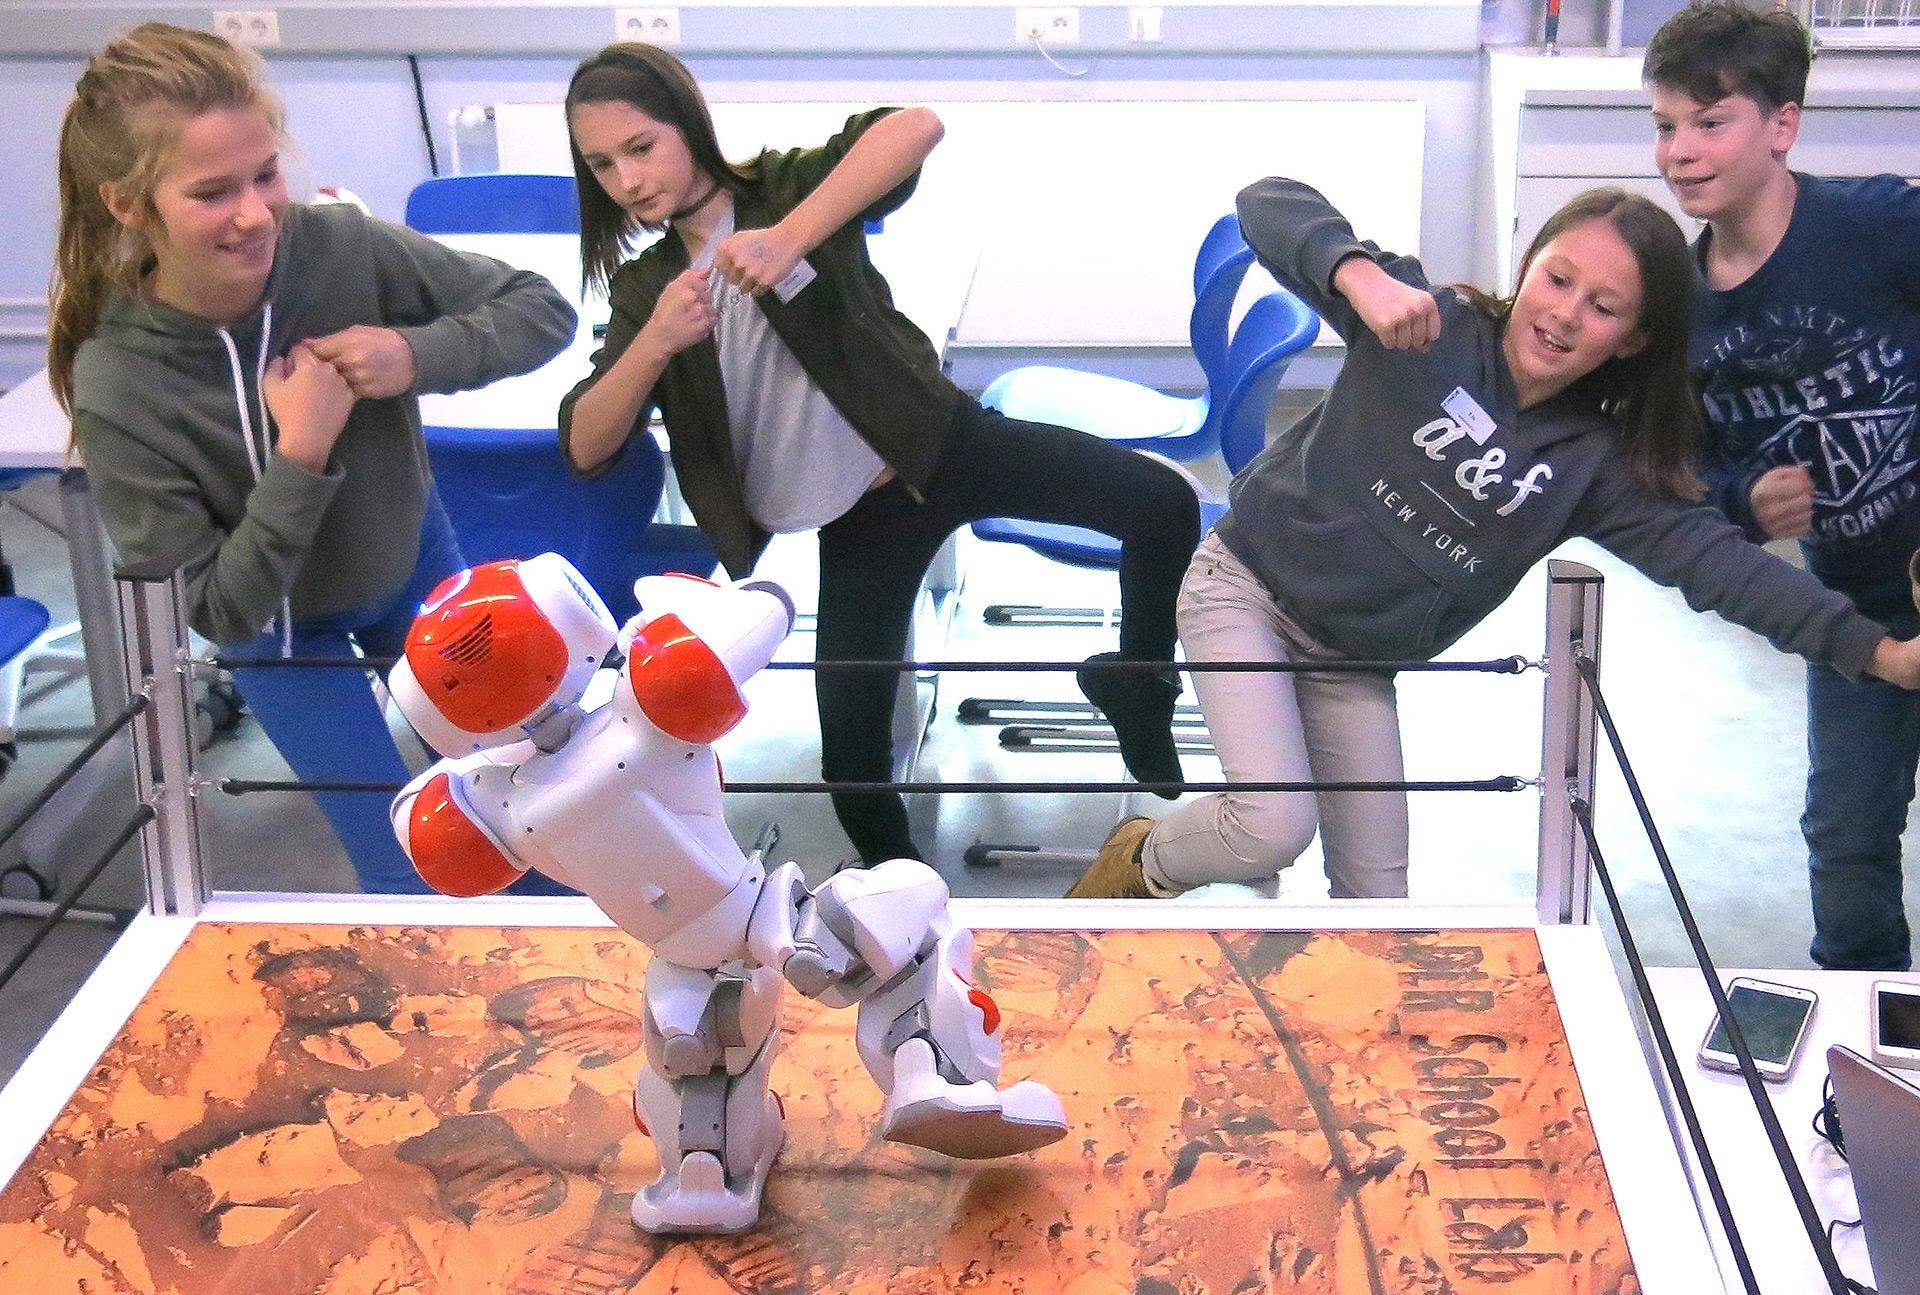 Grundprinzipien der aktuellen Forschung verstehen – das geht am besten auf spielerische Art. Hier tanzen Jugendliche mit einem Roboter, den sie vorher selbst programmiert haben.